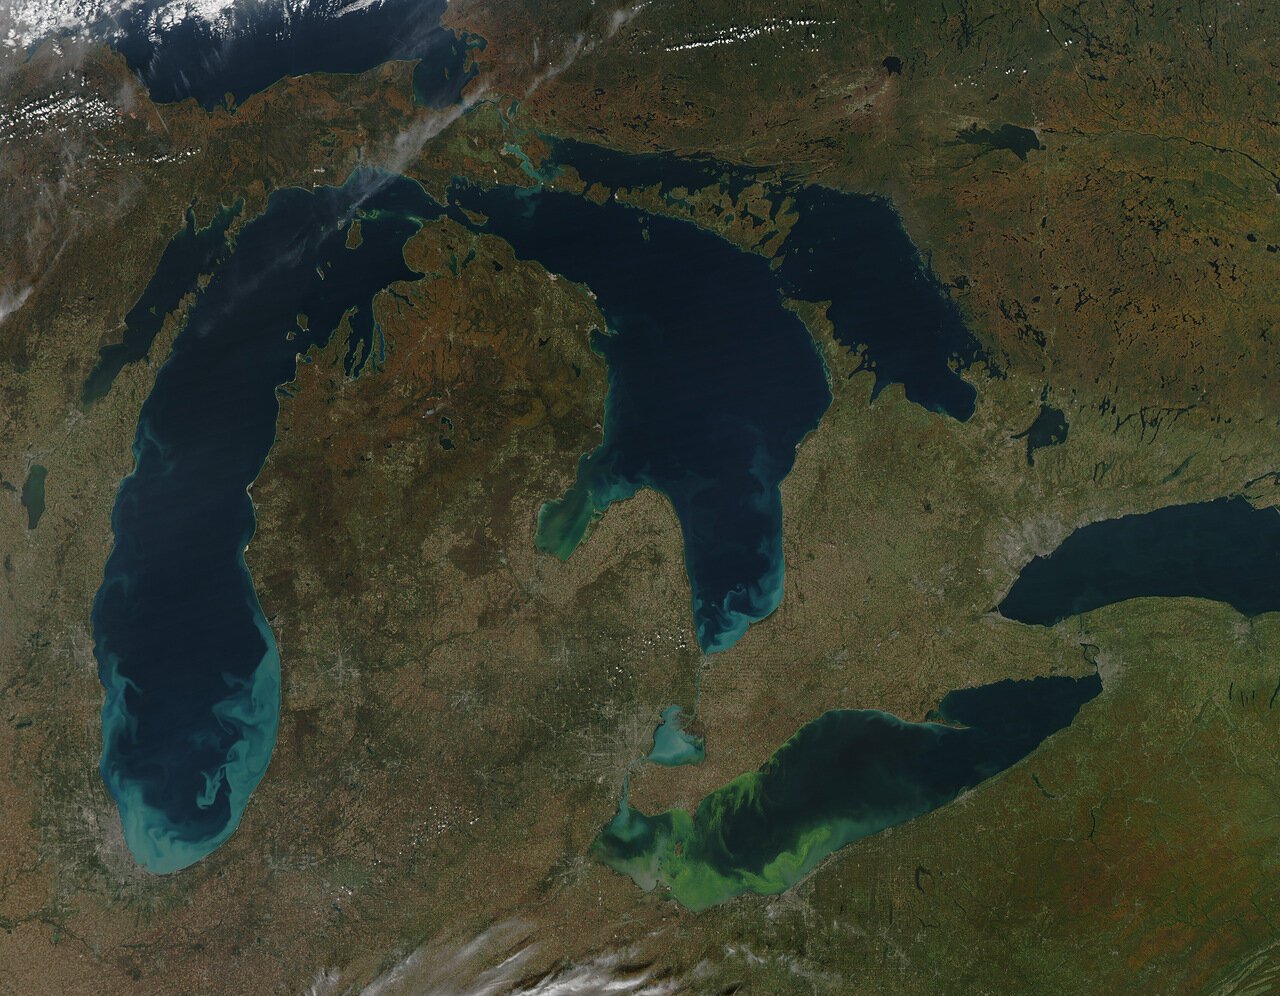 Великие озера Северной Америки Мичиган. Великие американские озёра верхнее Гурон Мичиган Эри Онтарио. Великие озёра озёра Северной Америки. 5 Великих озер Северной Америки. Самое восточное из великих озер 7